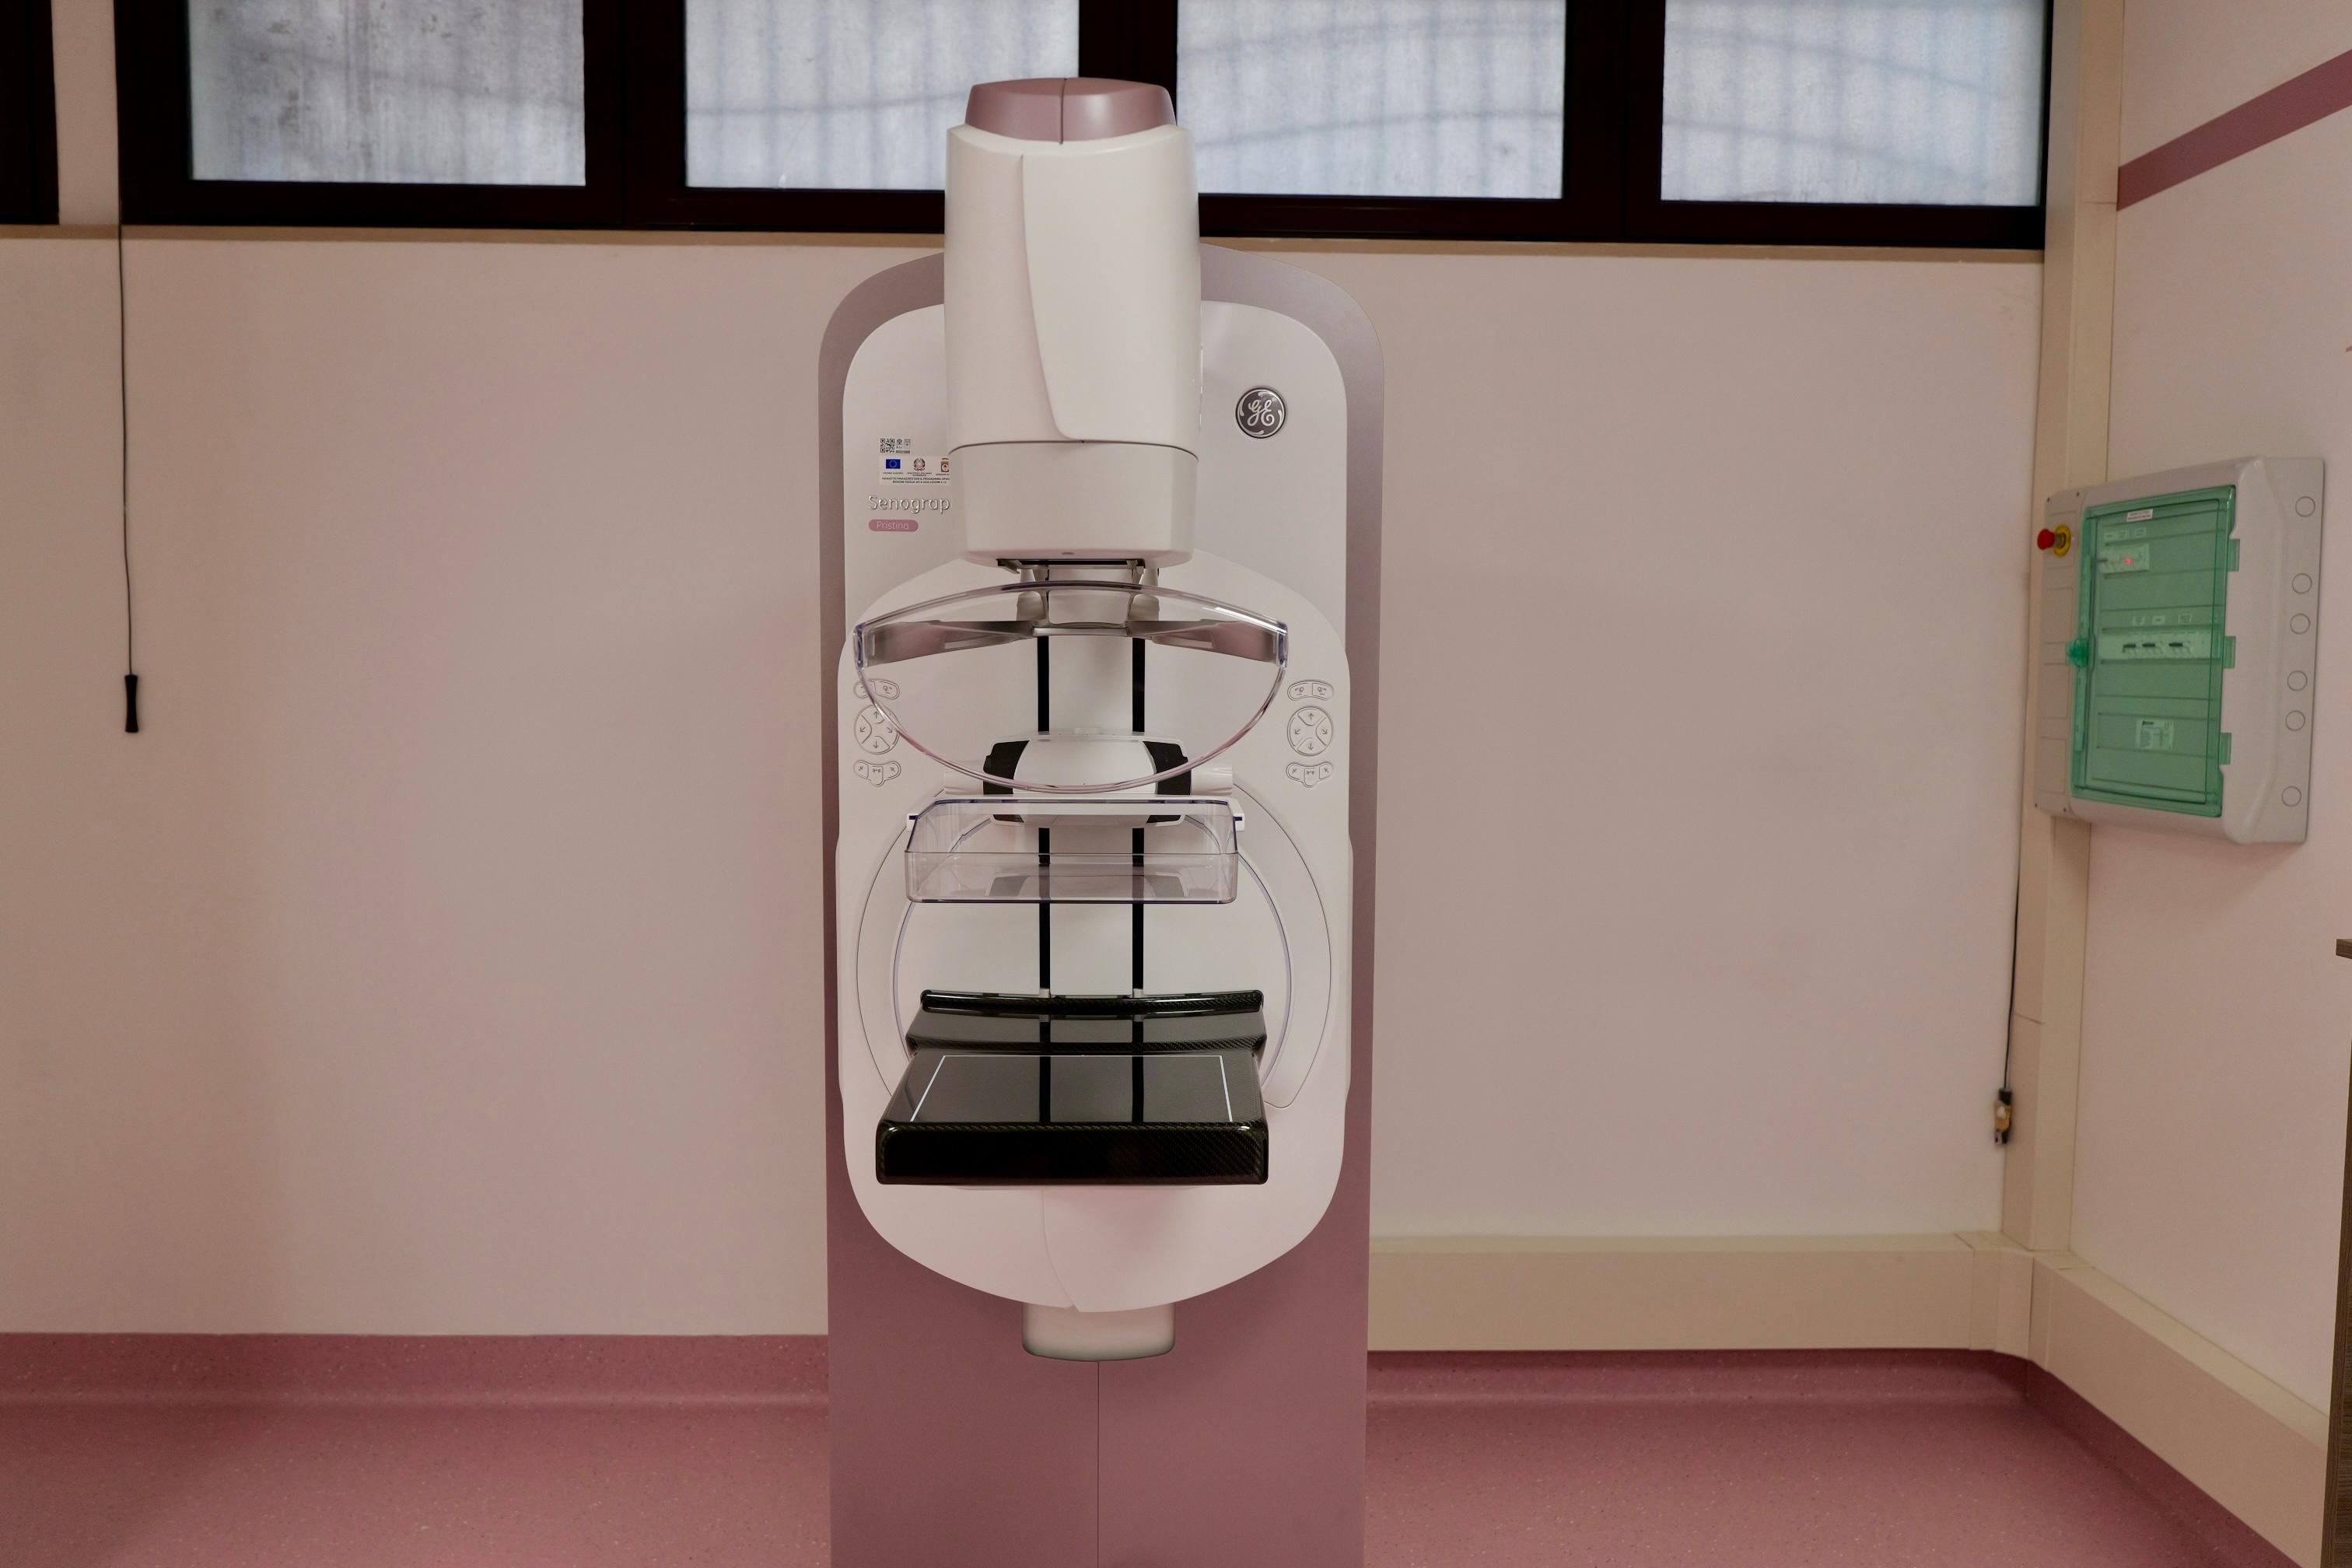 Galleria Un nuovo centro Screening con mammografo digitale 3D nel cuore di Bari: sarà a disposizione di 10mila donne residenti nei quartieri Madonnella, Libertà, Bari Murat e Città vecchia - Diapositiva 5 di 10